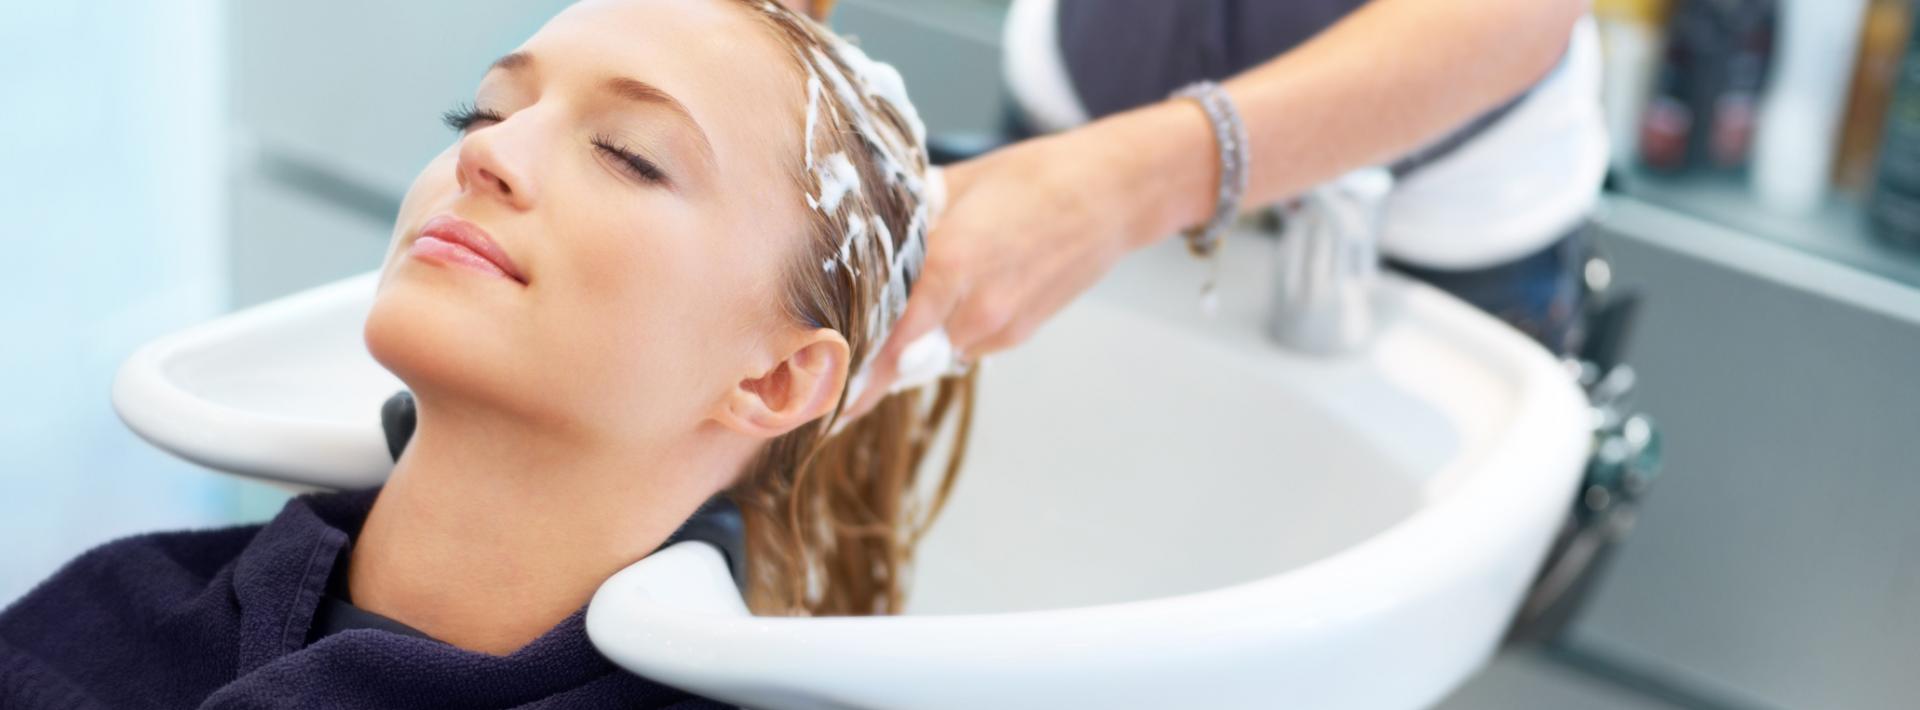 Polka trzykrotnie częściej chodzi do fryzjera niż kosmetyczki. Firmy z branży usług tego sektora miewają kłopoty z płynnością finansową